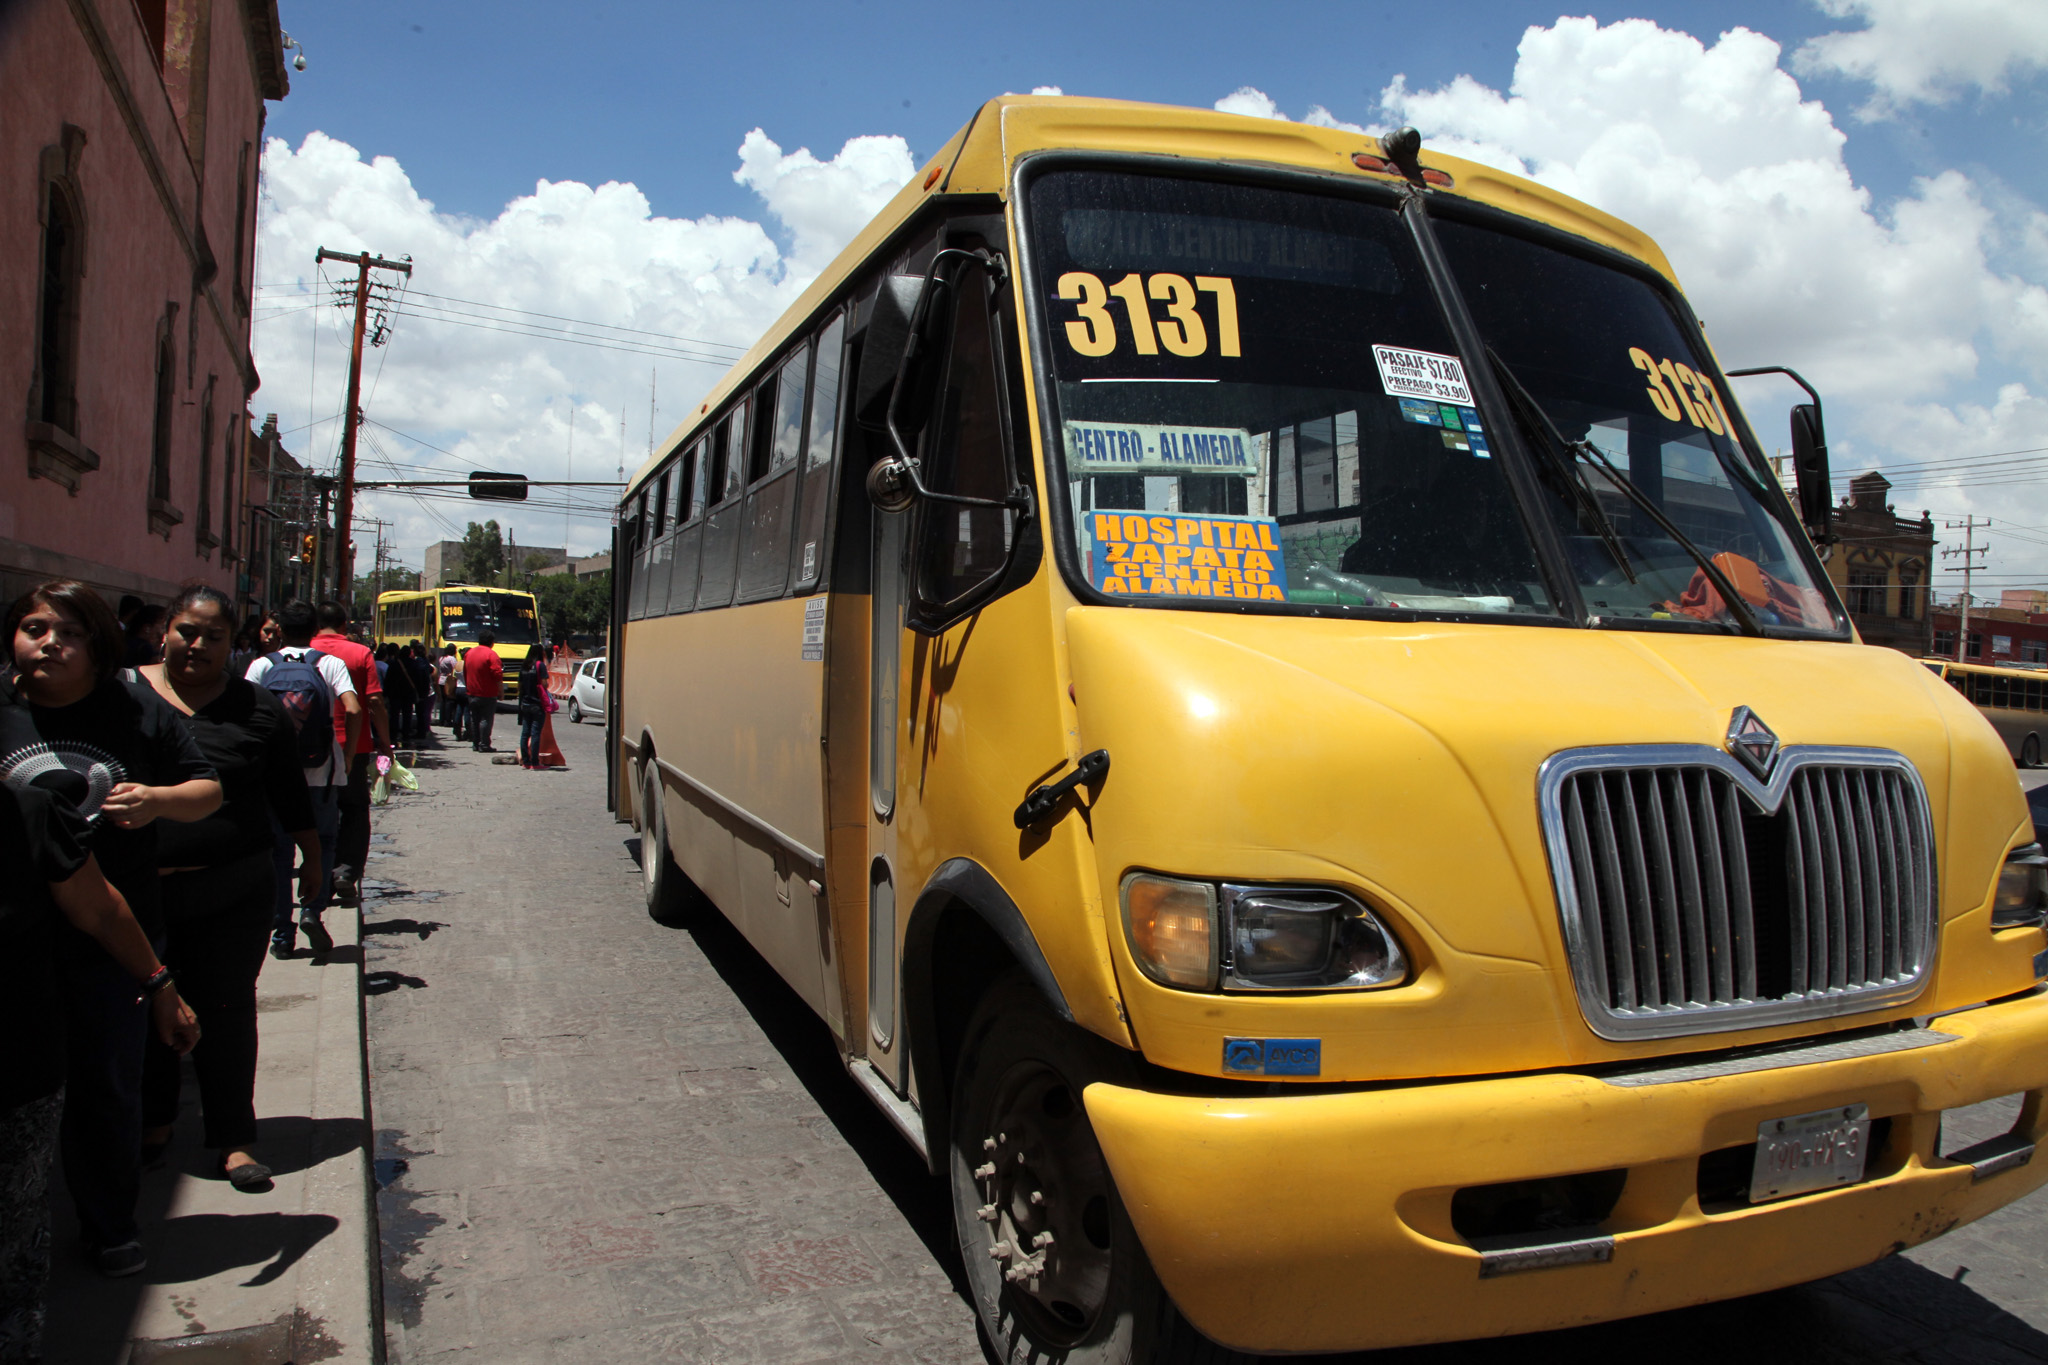  Aumento al transporte no llegará a los 10 pesos: SCT